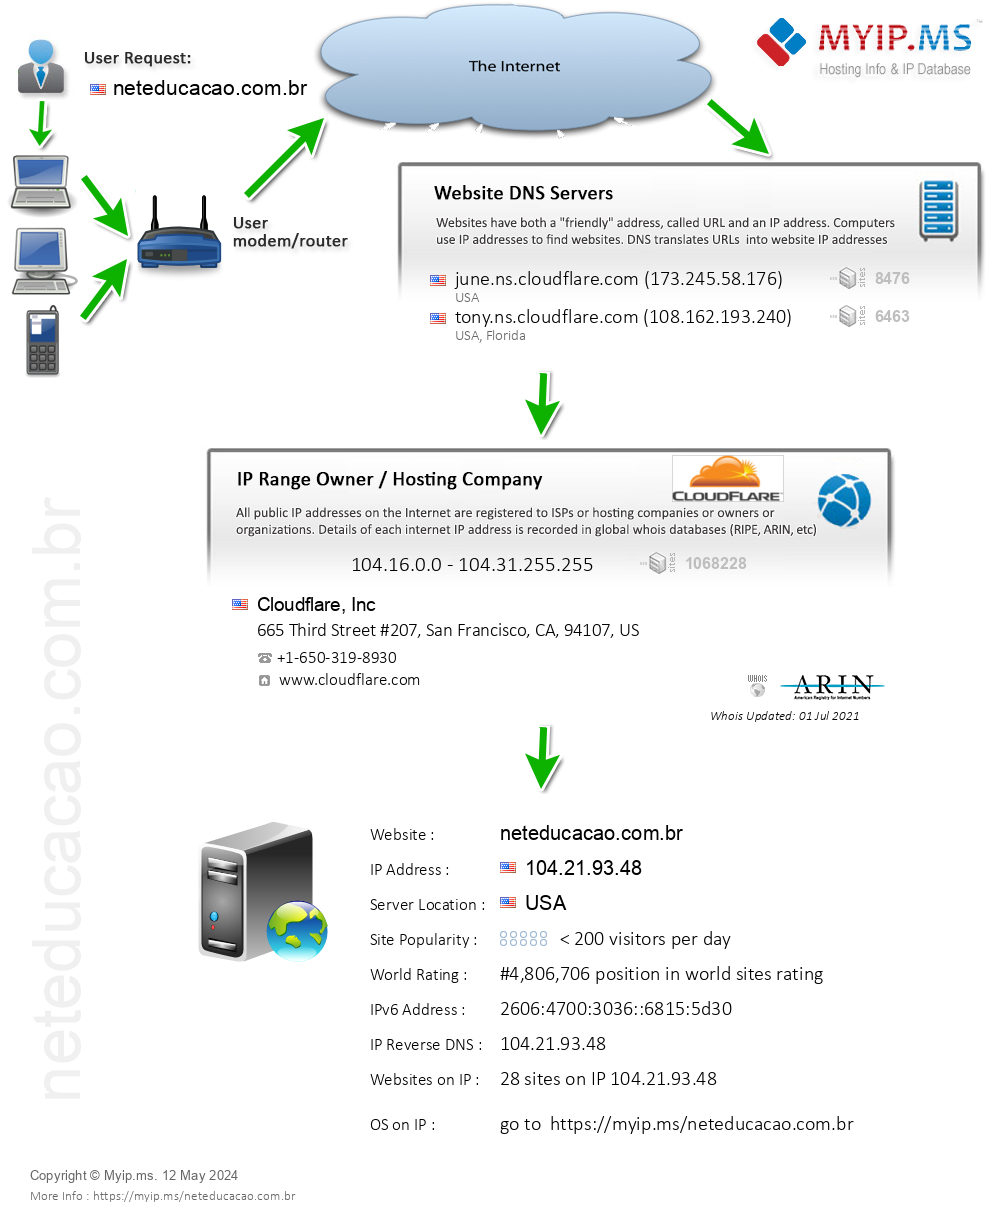 Neteducacao.com.br - Website Hosting Visual IP Diagram